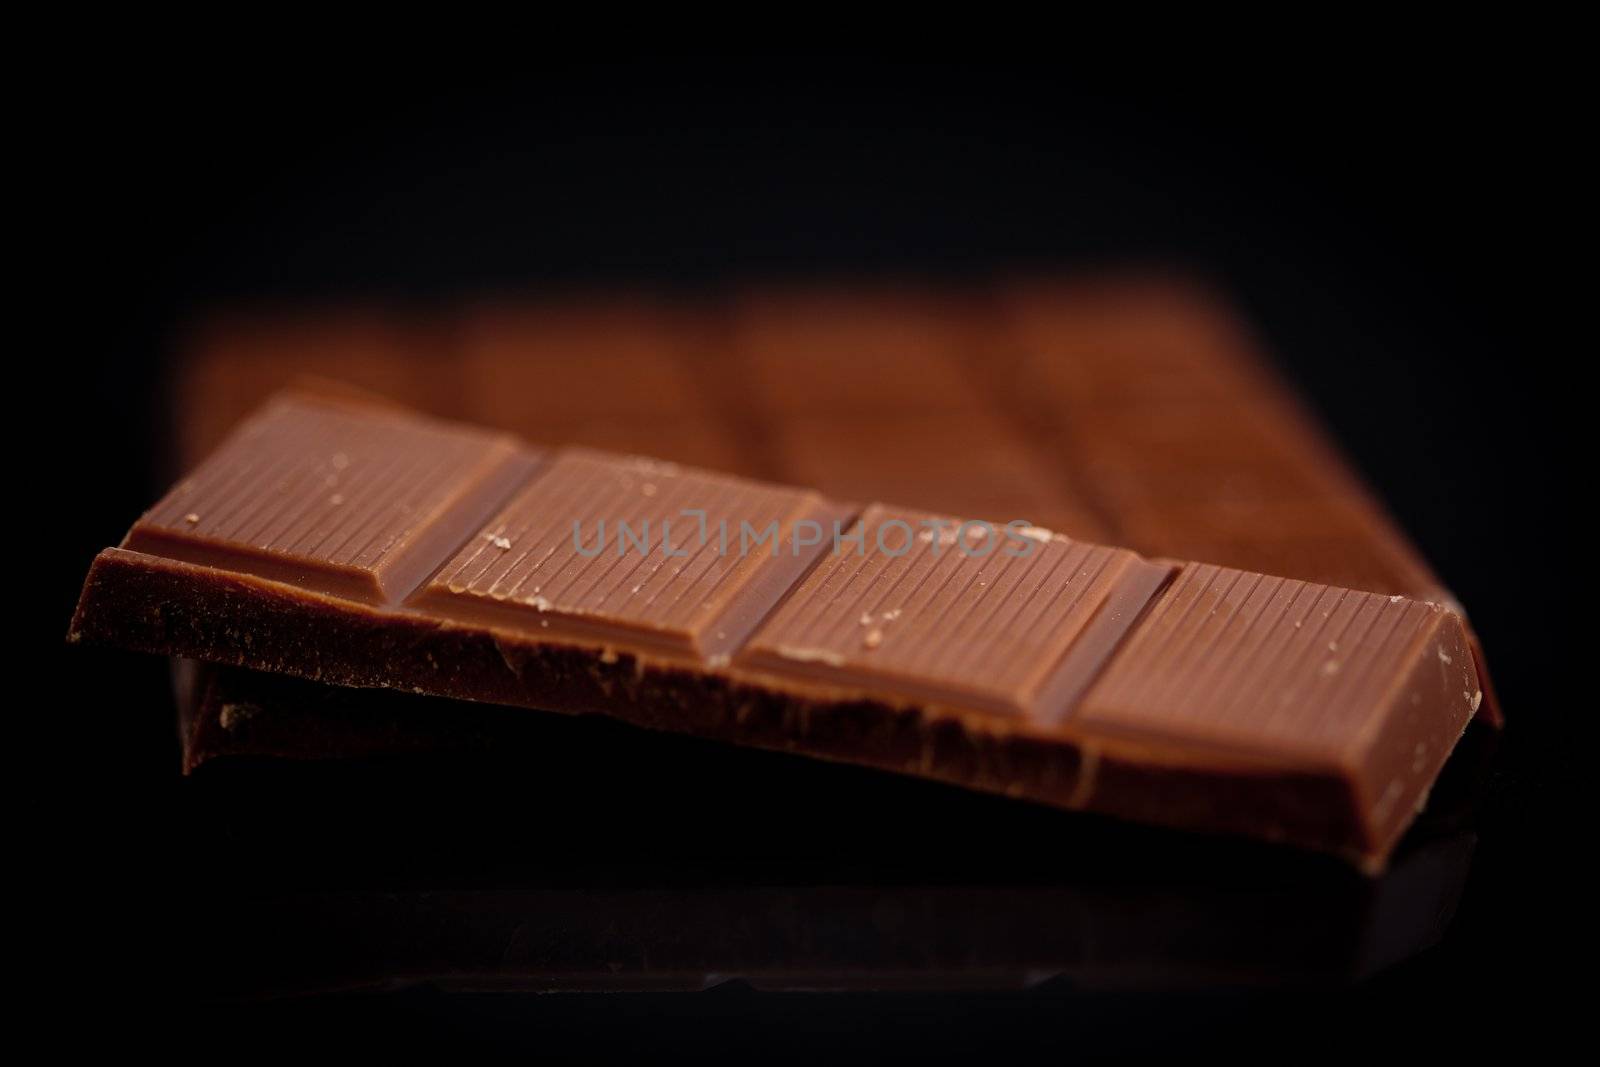 Blurred bar of dark chocolate by Wavebreakmedia